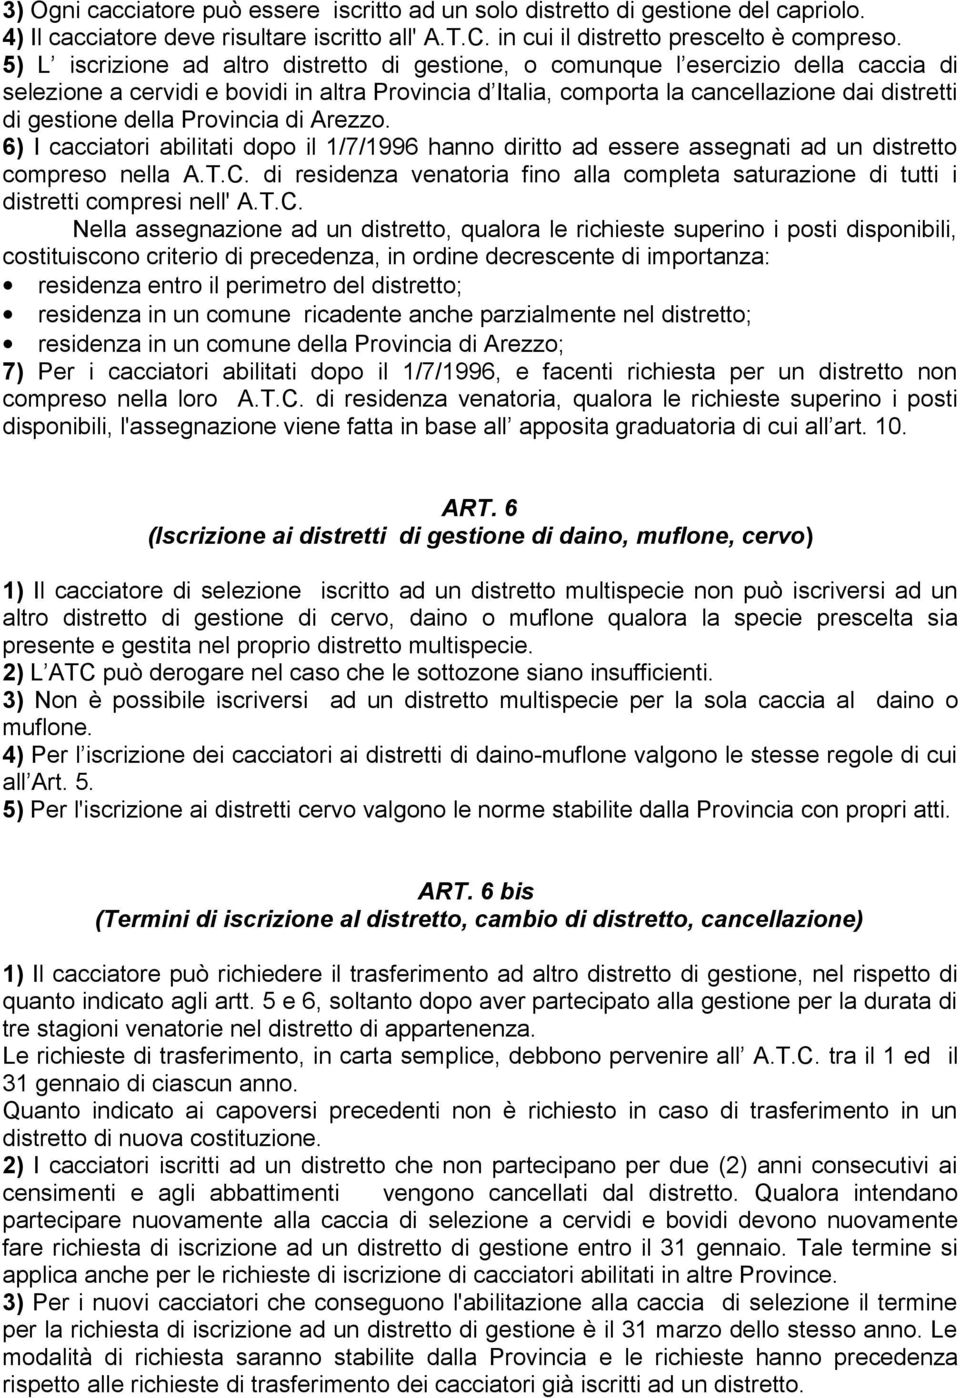 della Provincia di Arezzo. 6) I cacciatori abilitati dopo il 1/7/1996 hanno diritto ad essere assegnati ad un distretto compreso nella A.T.C.